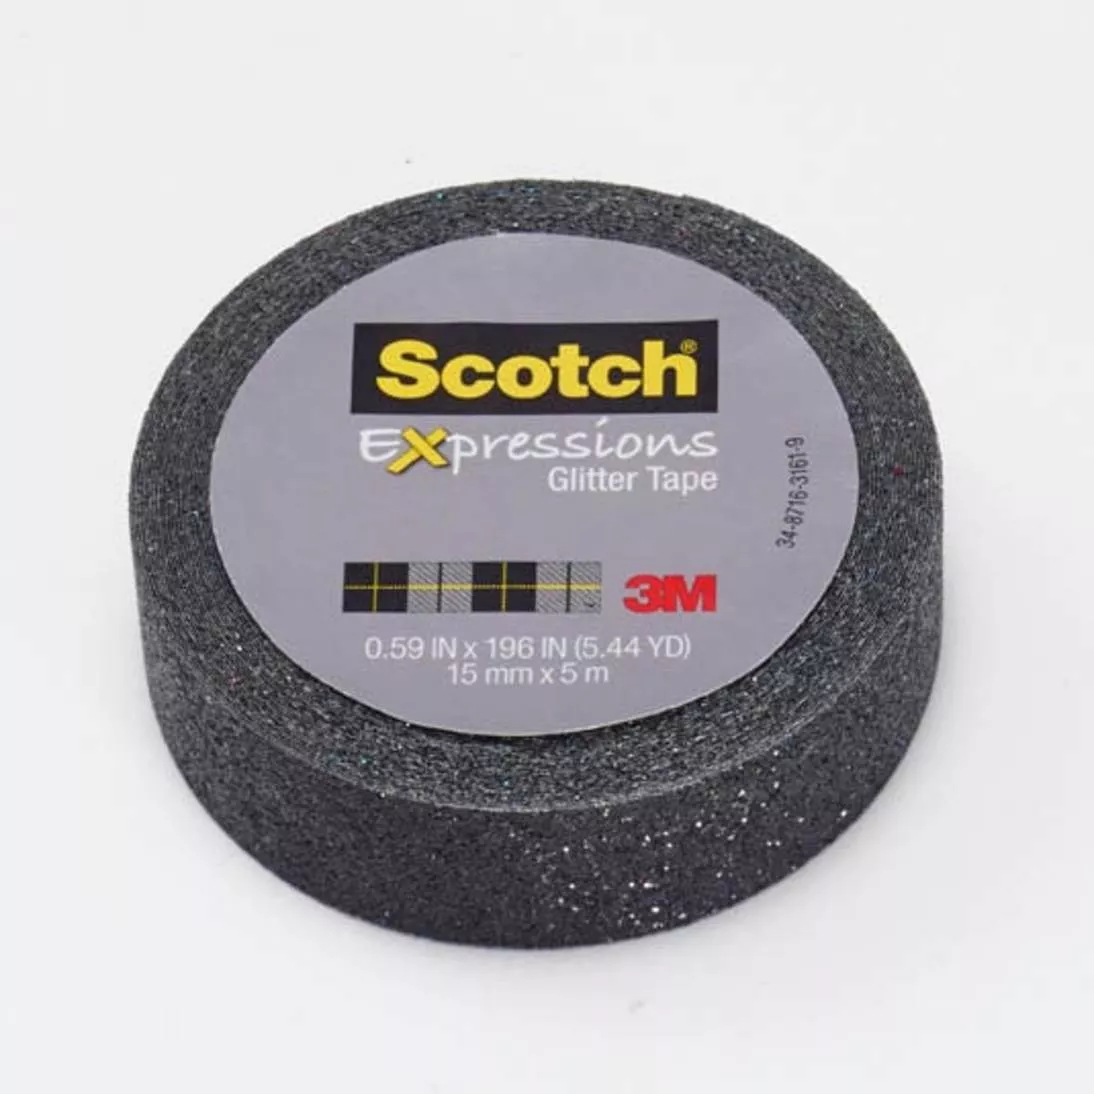 Scotch® Expressions Glitter Tape C514-BLK, .59 in x 196 in (15 mm x 5 m)
Black Glitter